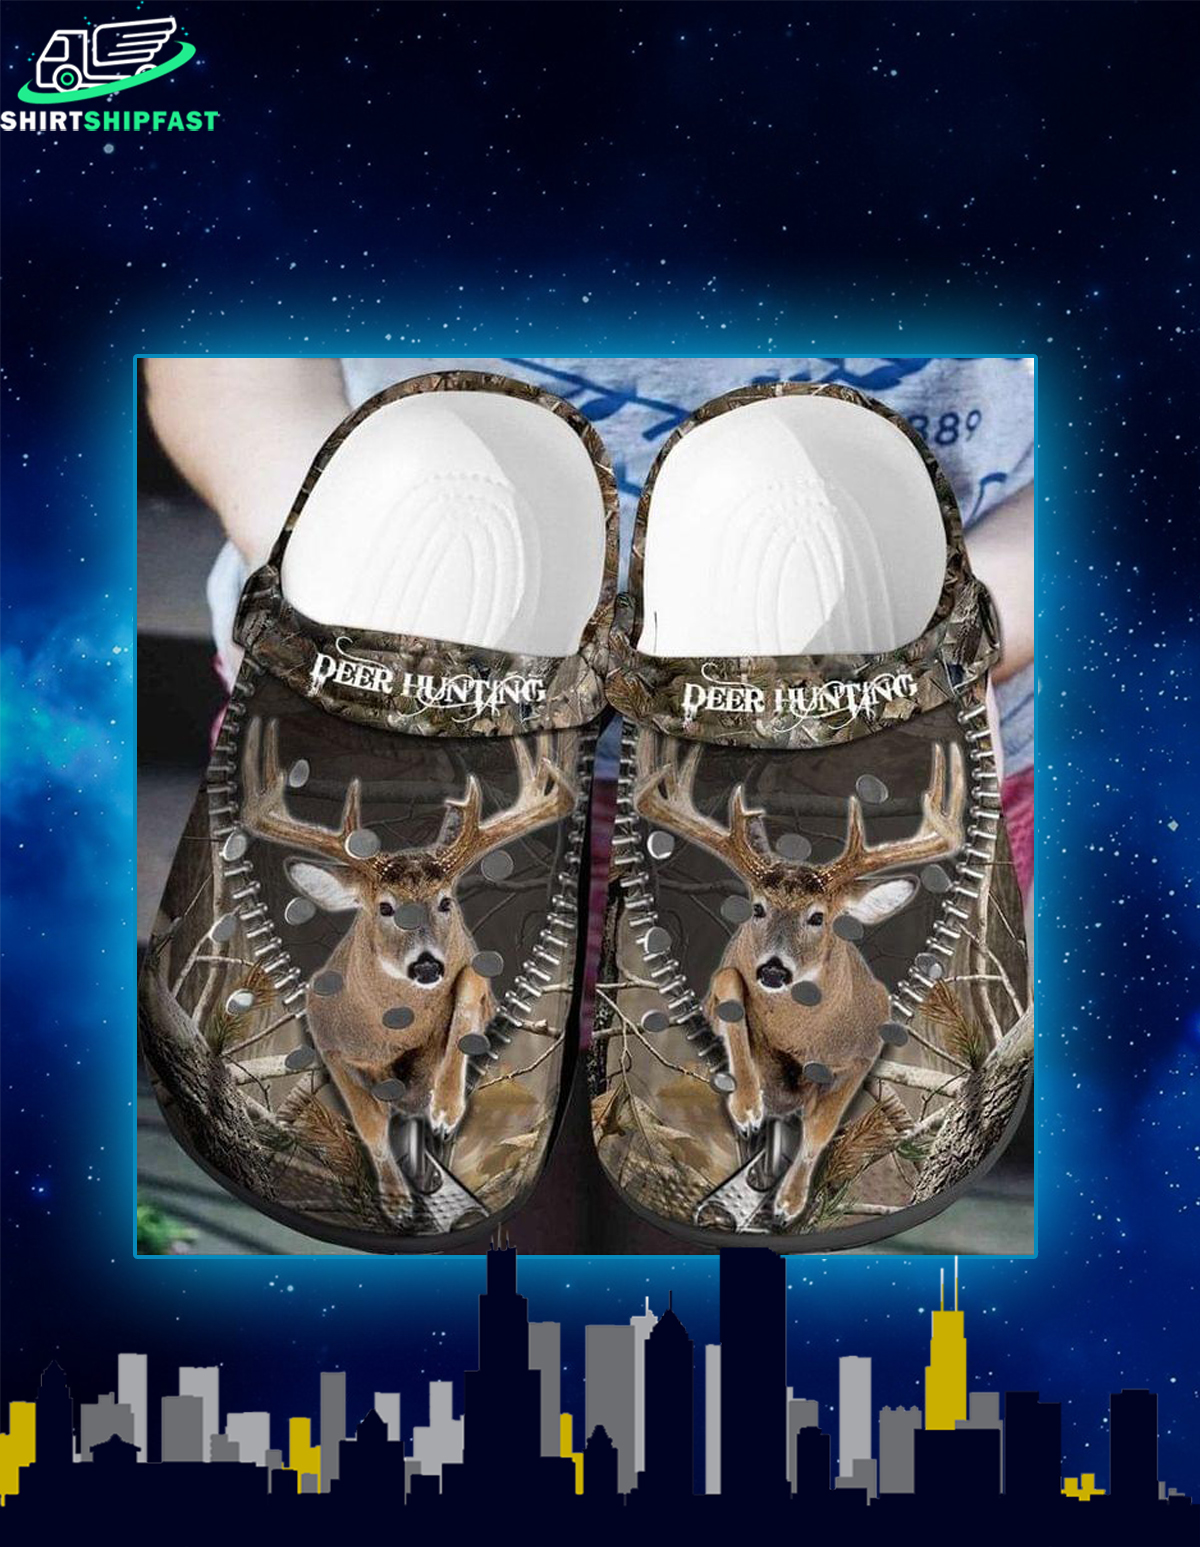 hunting crocs shoes